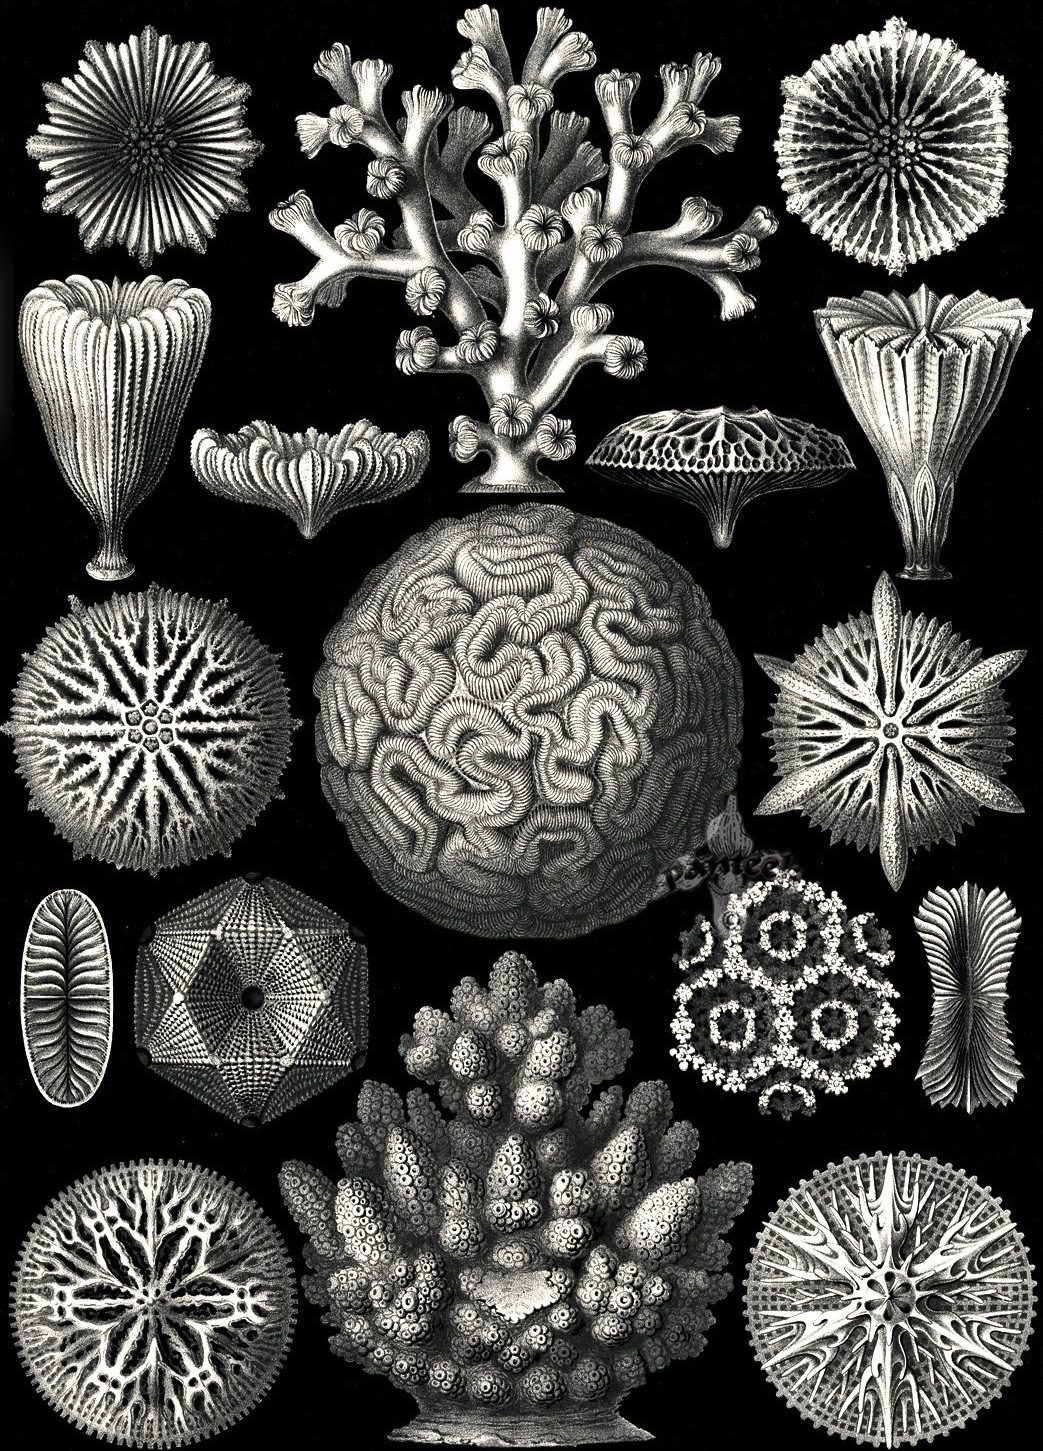 Kunstformen der Natur - Ernst Haeckel 1899-1904 (3).jpg